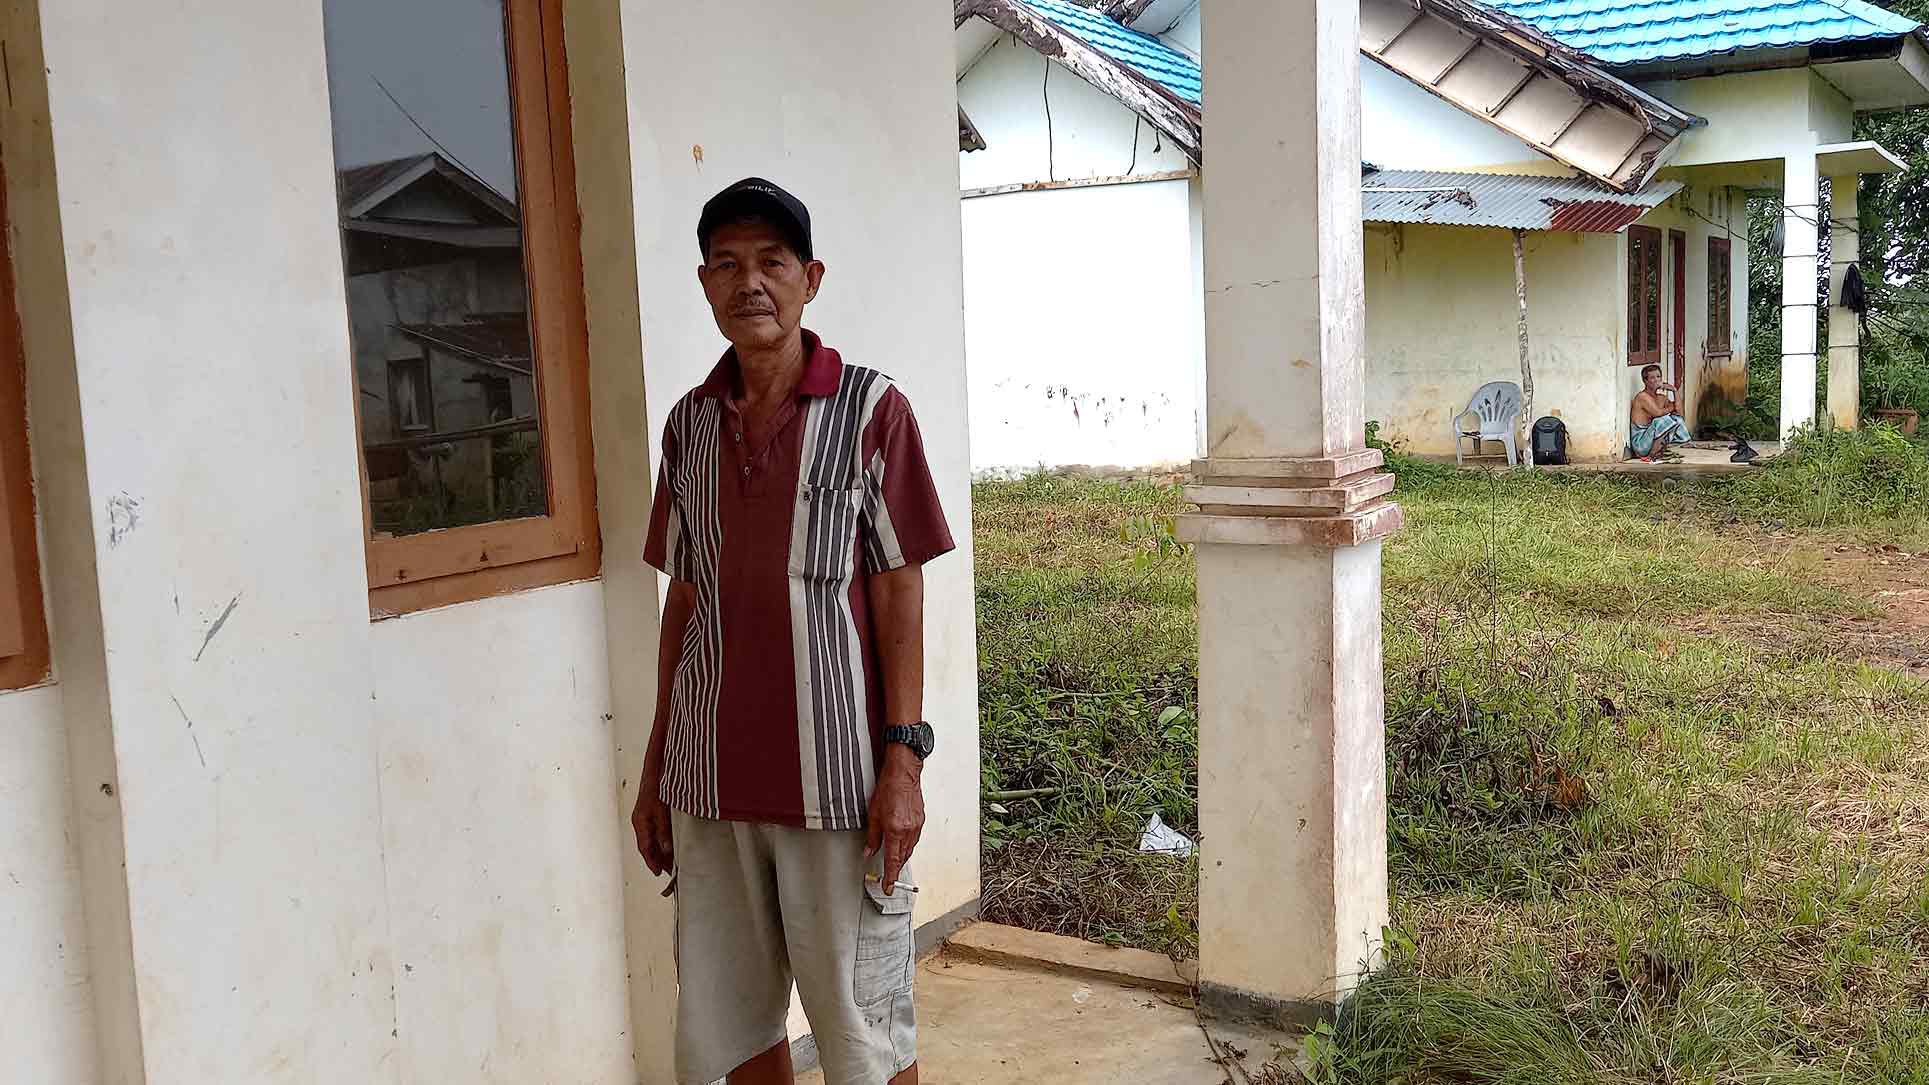 Bupati Lebong Dituntut Segera Aktifkan Roda Pemerintahan di wilayah Eks Padang Bano Sesuai Pakta Integritas